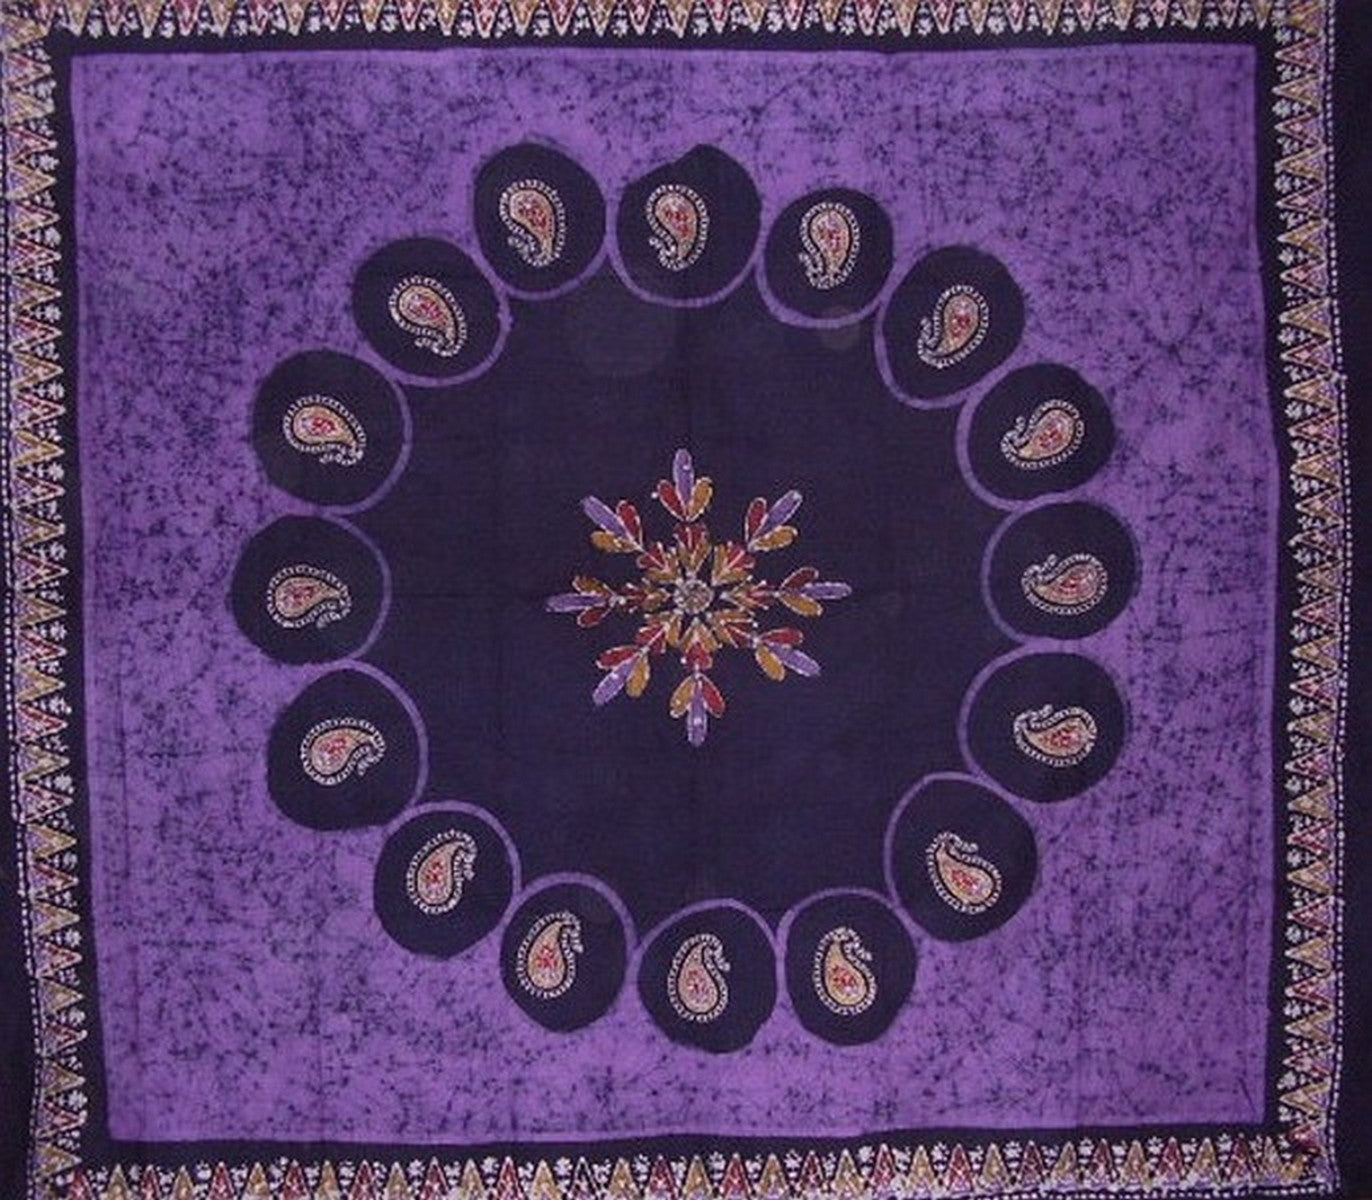 Seprai Katun Permadani Batik 108" x 88" Full Queen Ungu